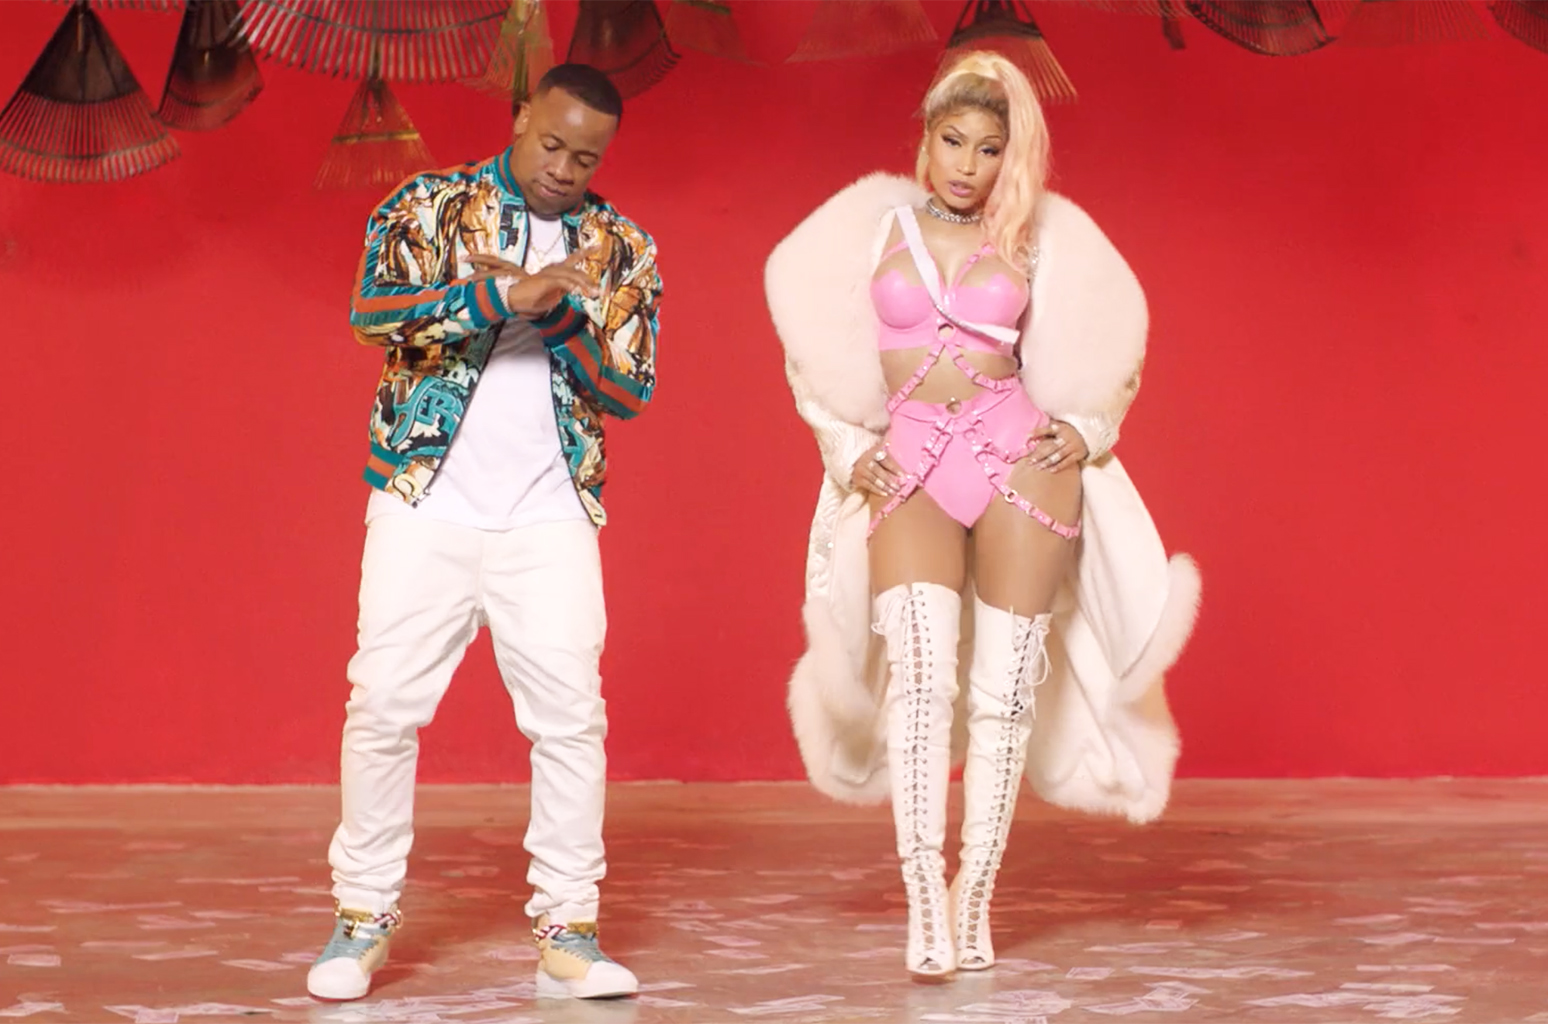 Nicki Minaj – Rake It Up (Video) .